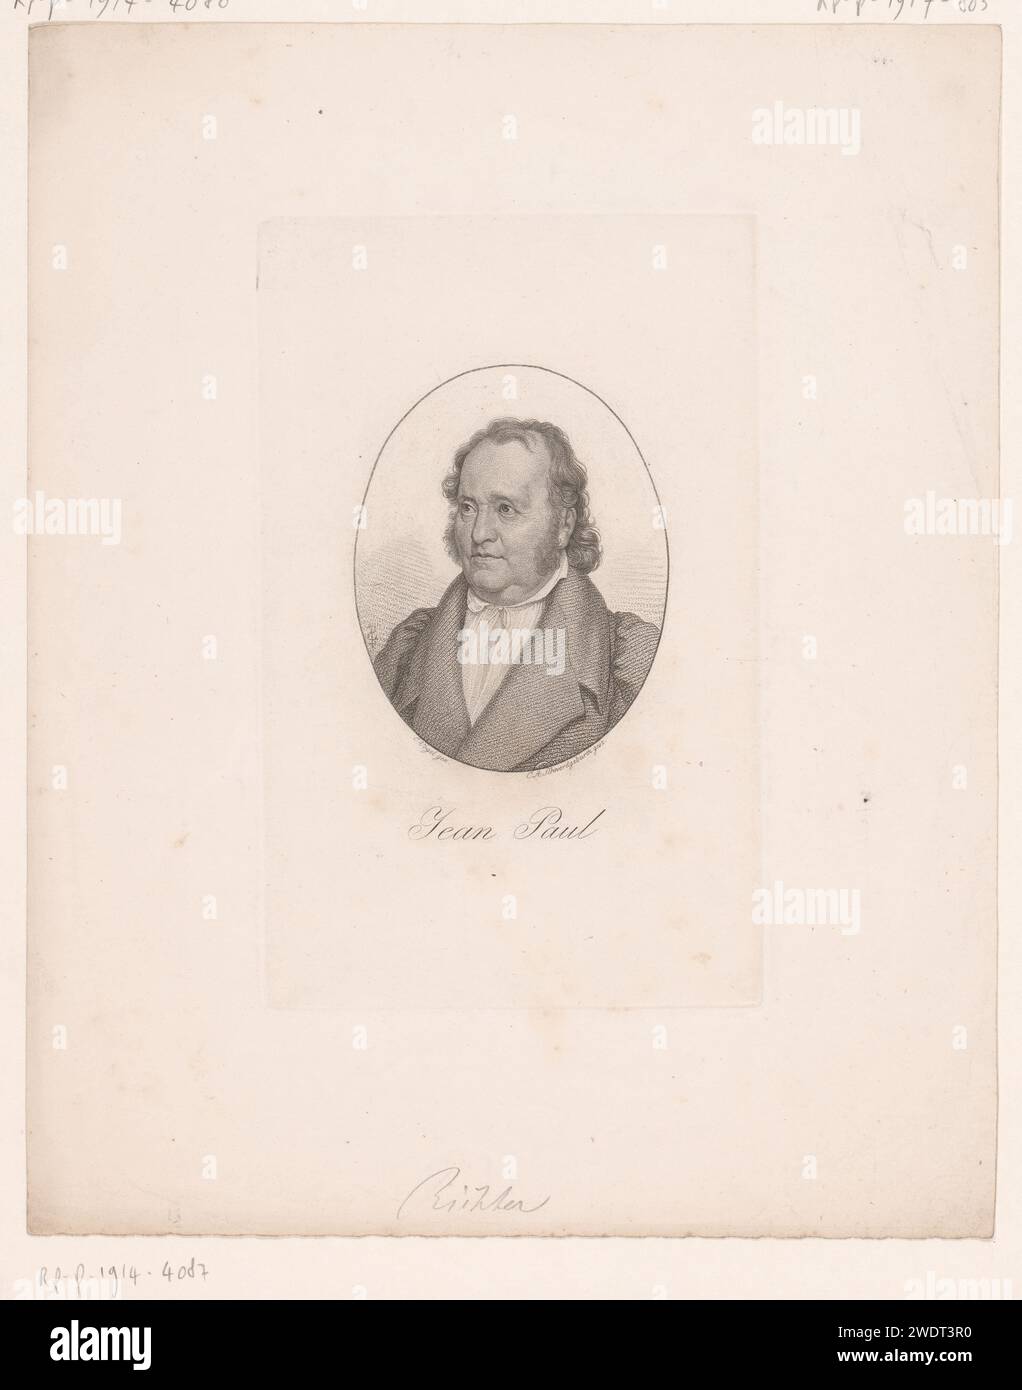 Ritratto van Jean Paul, Carl August Schwerdgeburth, dopo Carl Christian Vogel von Vogelstein, 1795 - 1878 carta stampata persone storiche. scrittore, poeta, autore Foto Stock